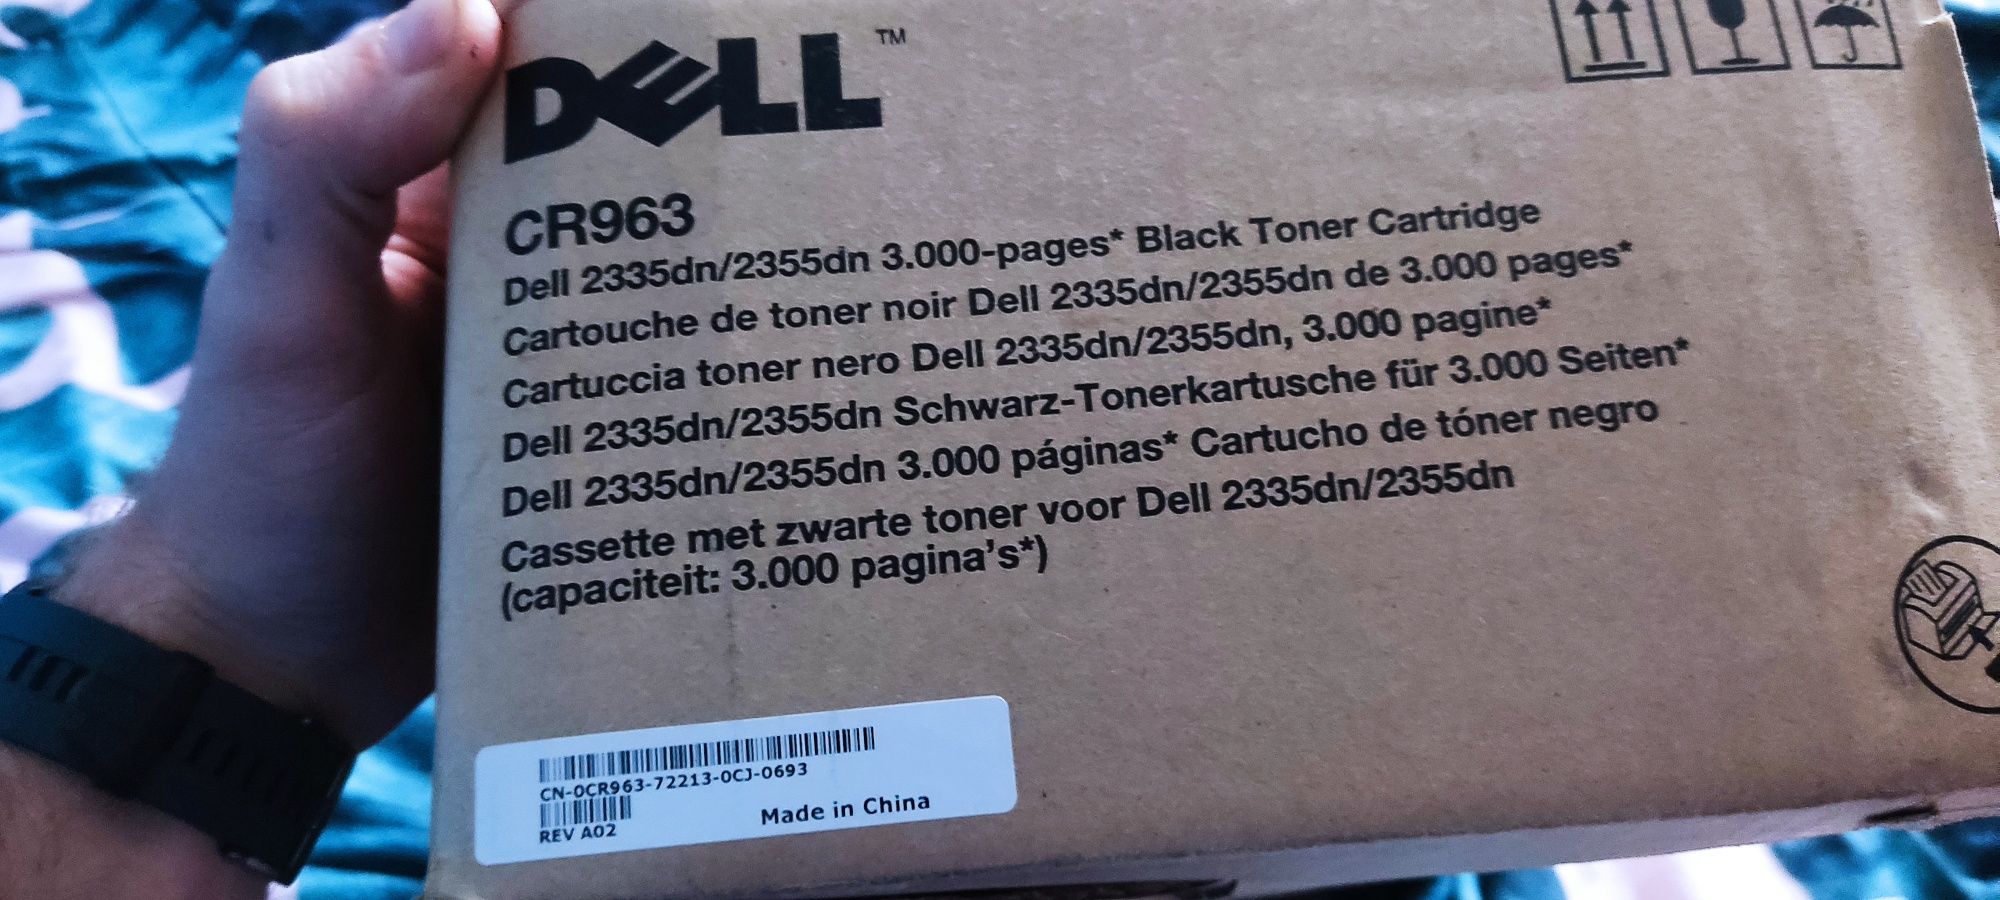 Toner DELL CR963 Dell 2335dn/2355dn